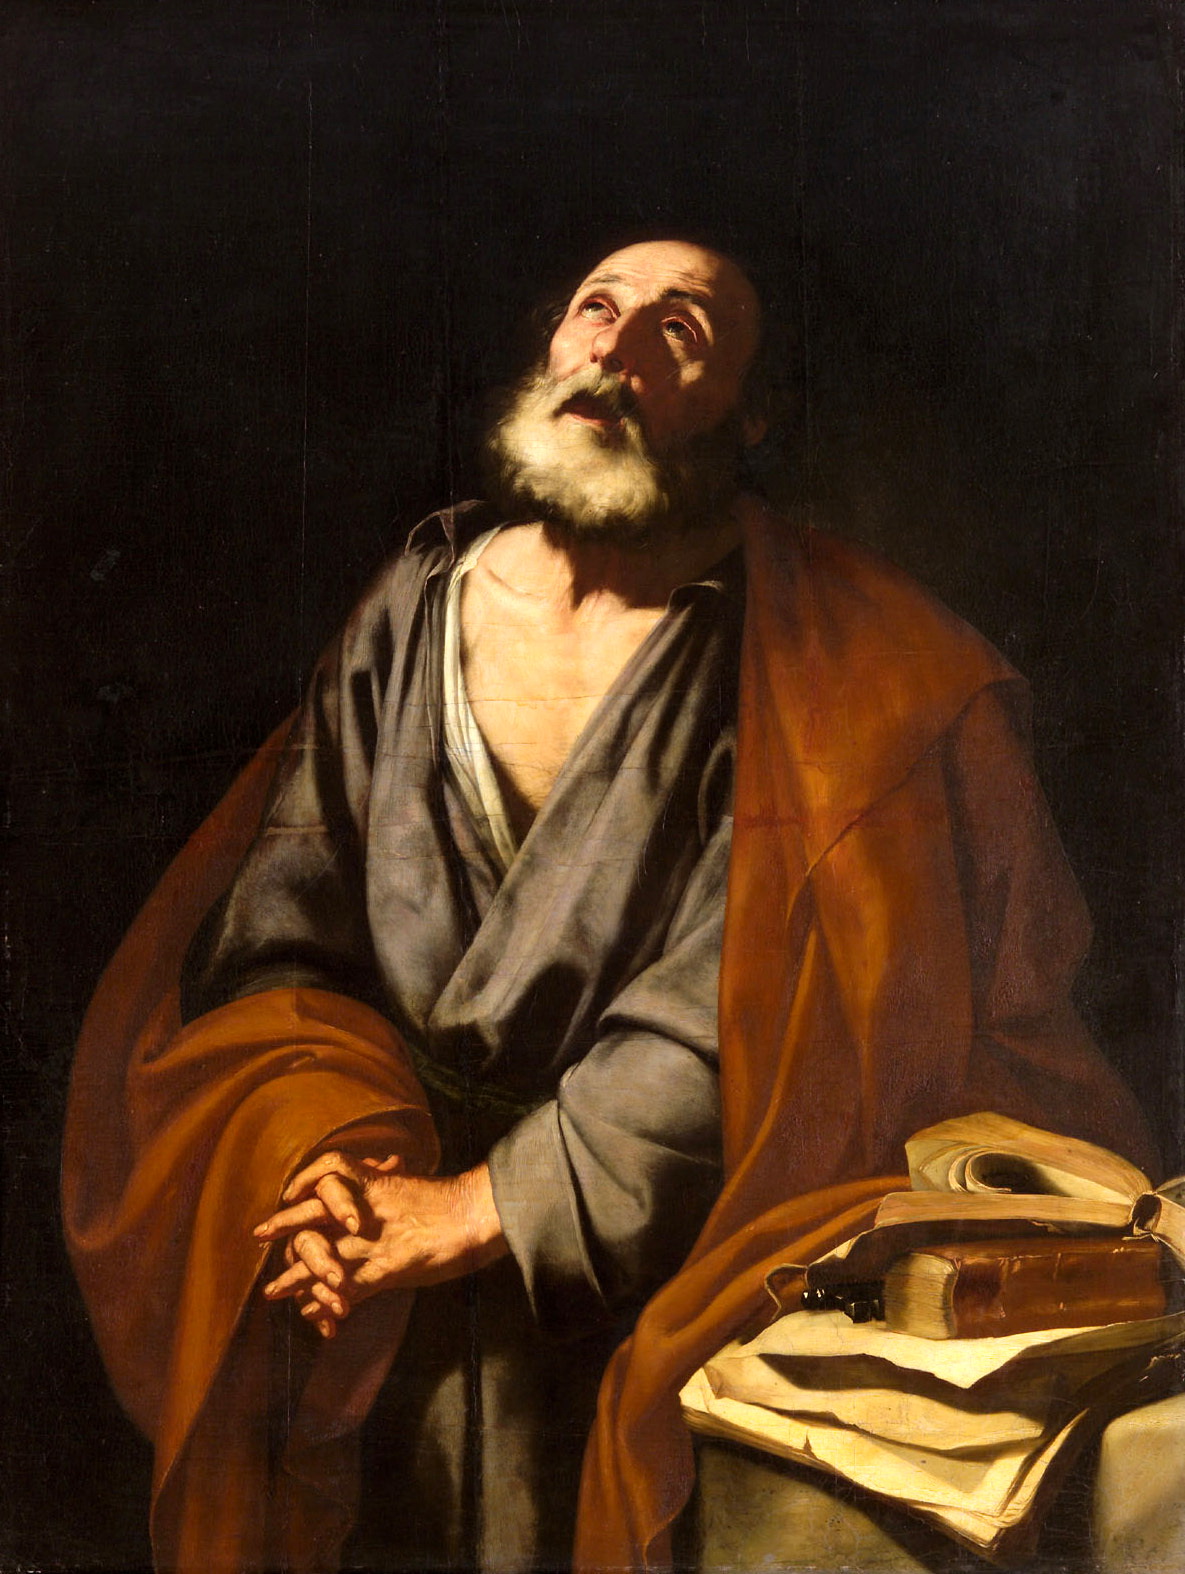 Jusepe+de+Ribera-1591-1652 (109).jpg